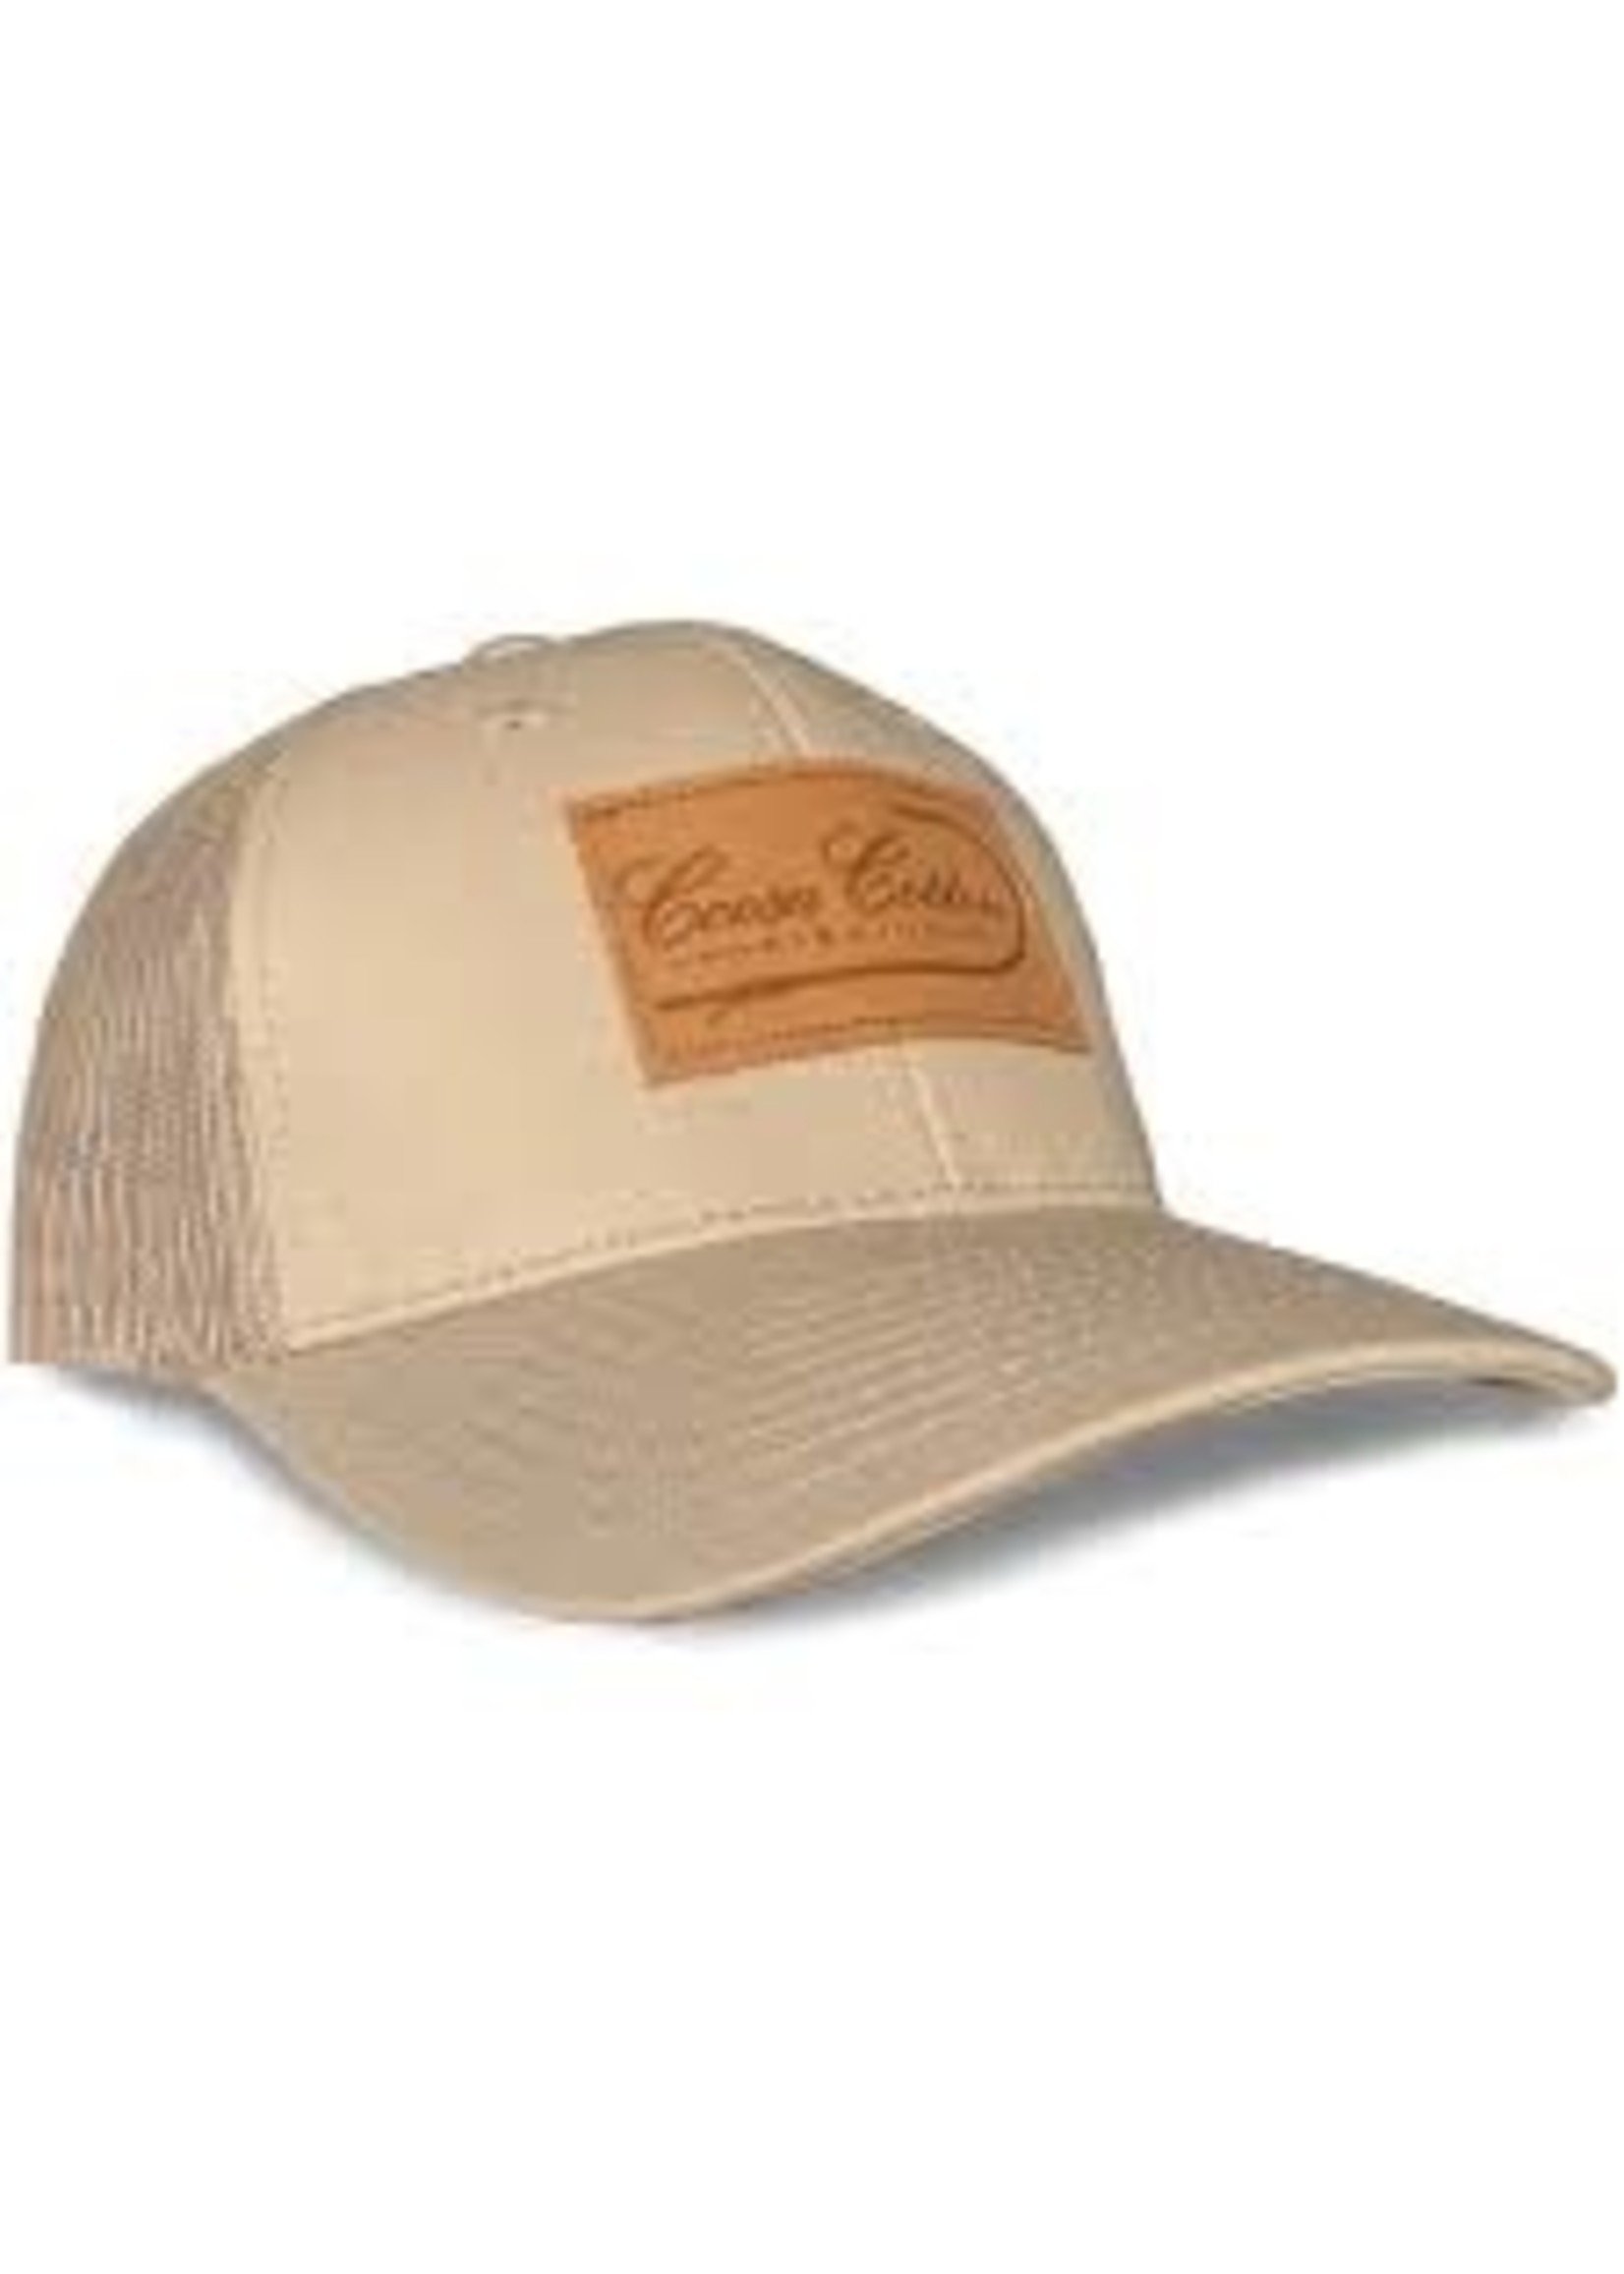 Coosa Cotton Patch Hat